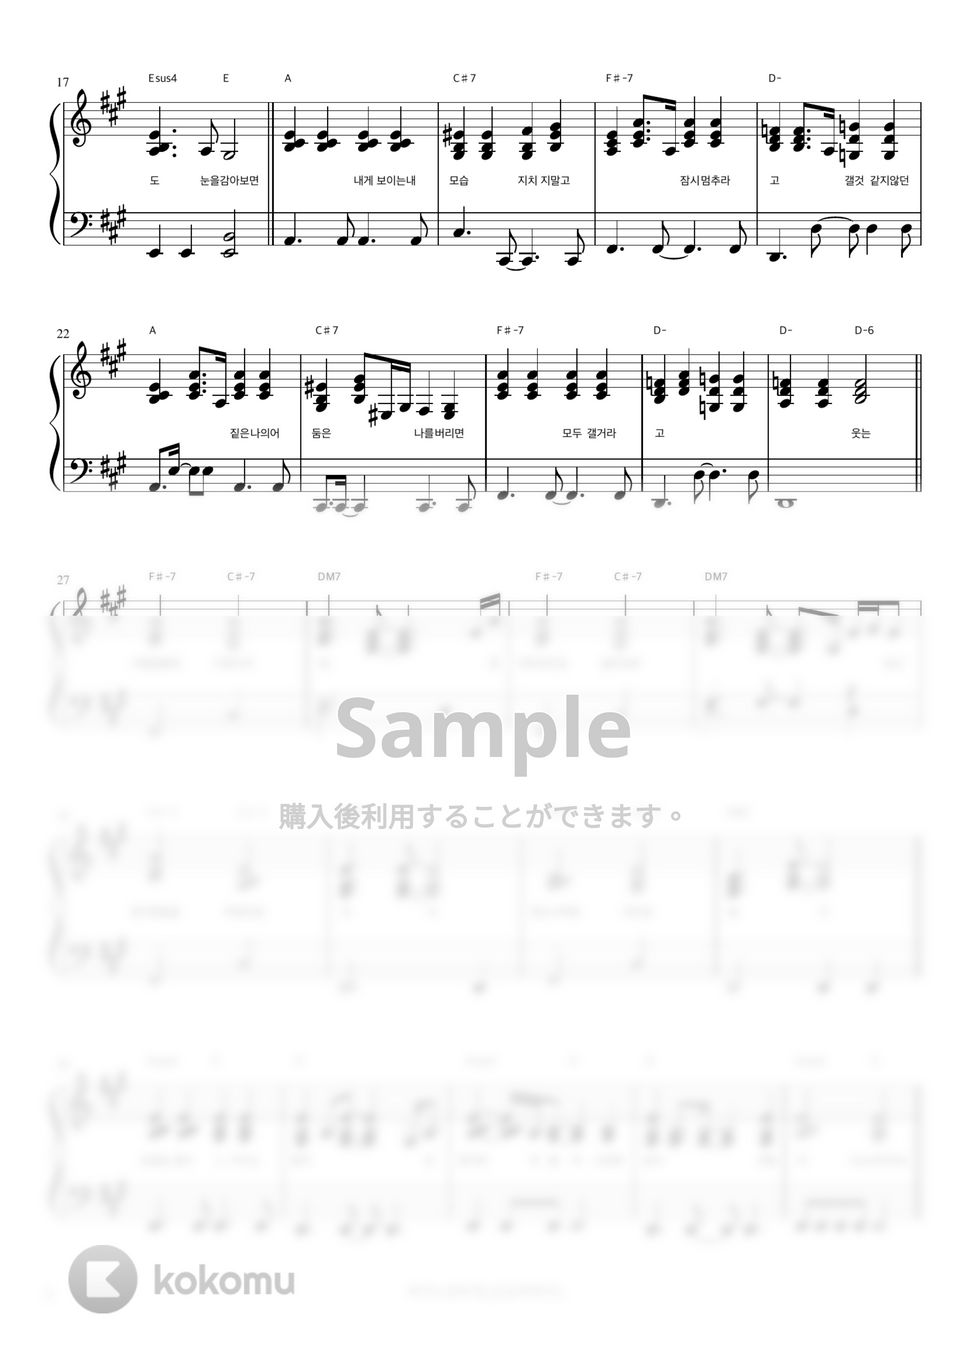 Sondia - Grown Ups (伴奏楽譜) by 피아노정류장